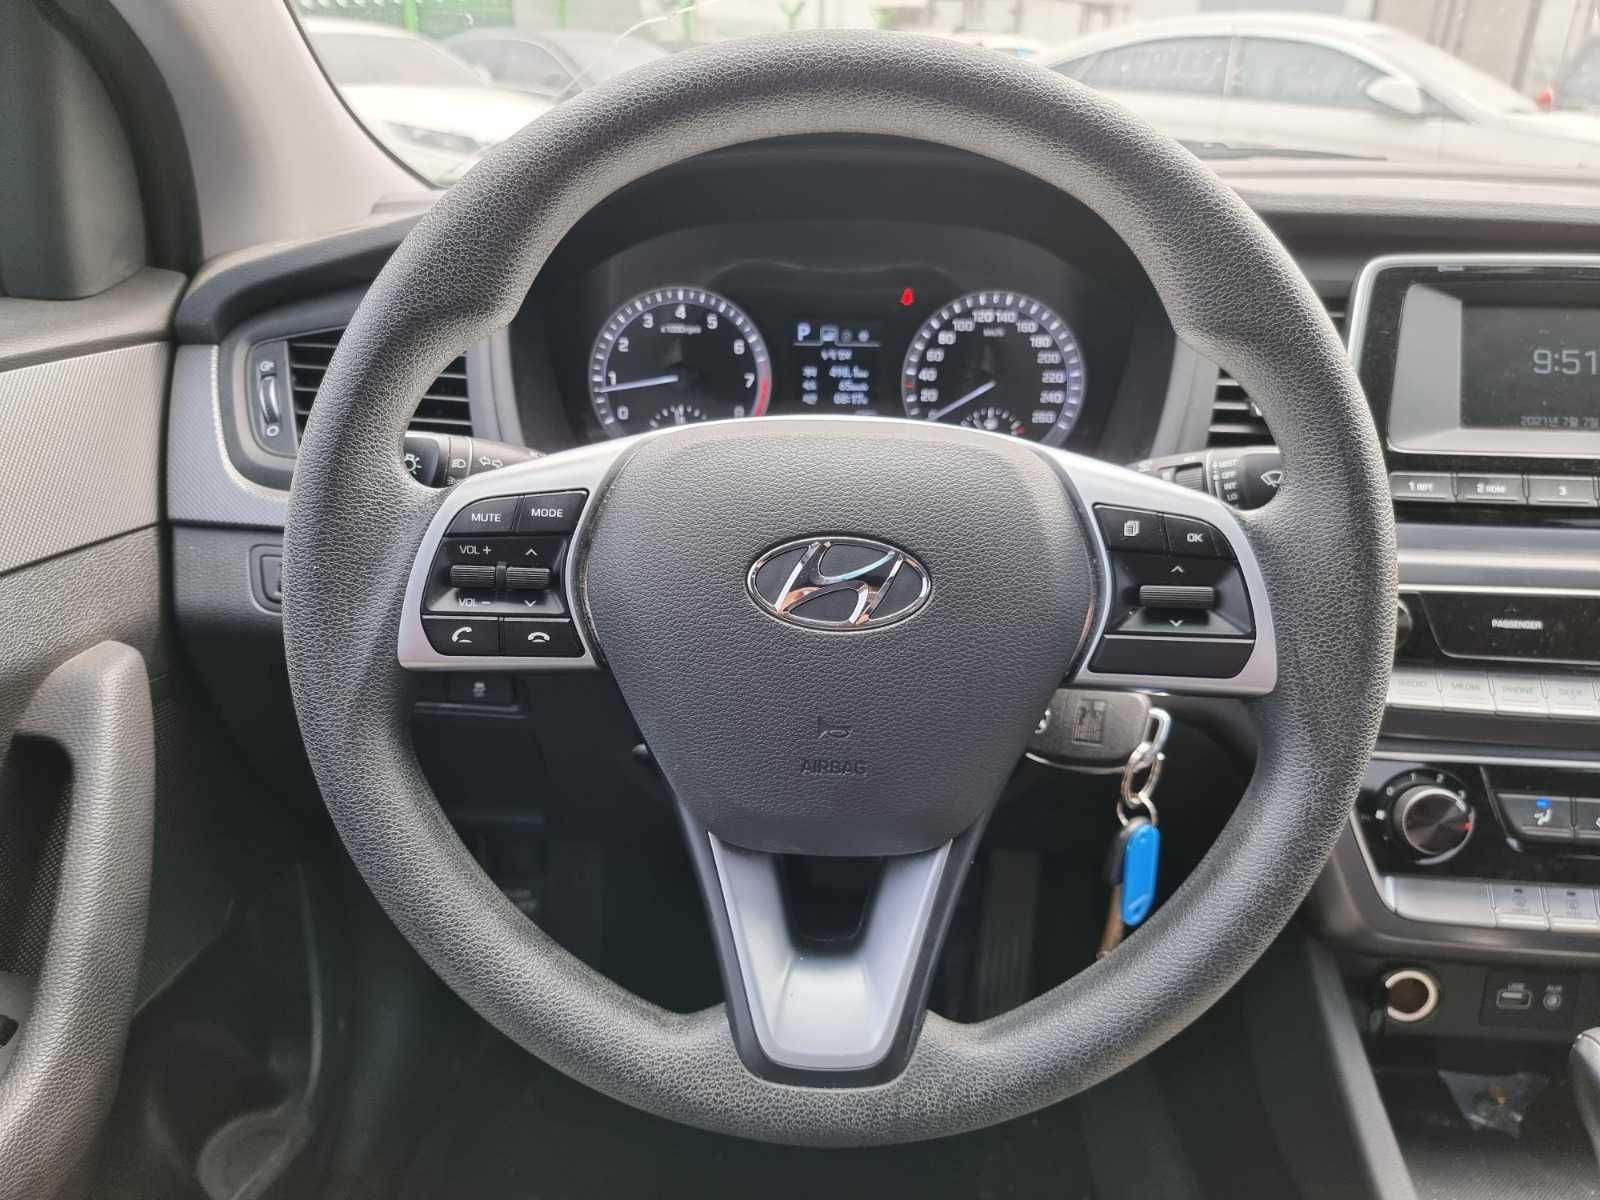 Hyundai Sonata 2018 2.0 Газ